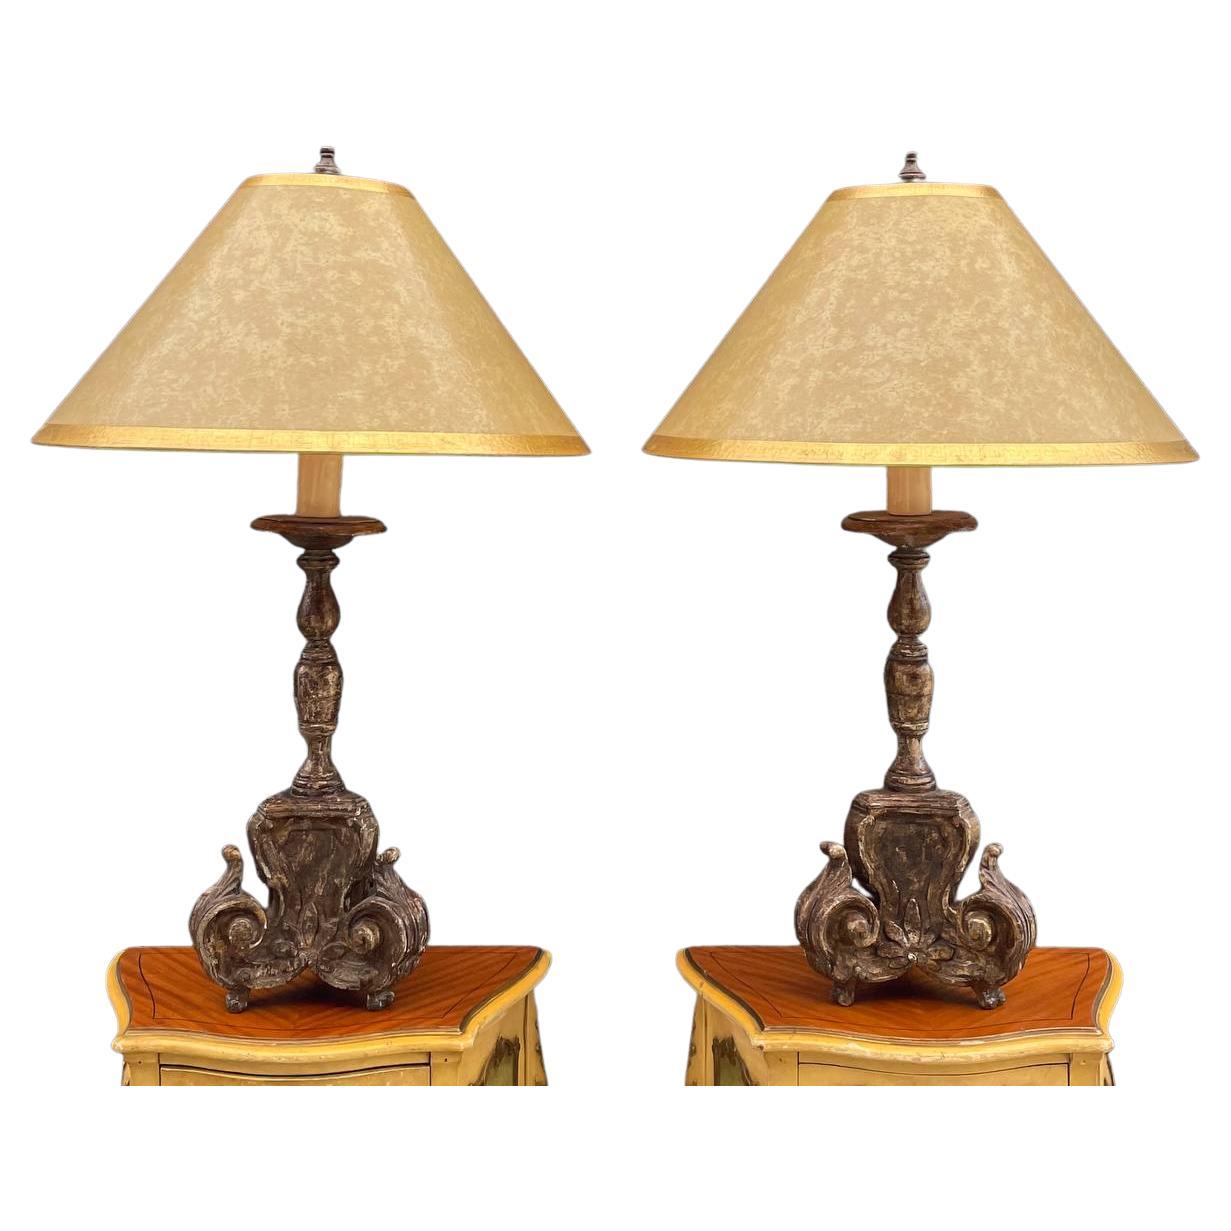 Paar von  Italienische antike Kerzenständer im Stil von antiken Kerzenständern mit antiker Lackierung F